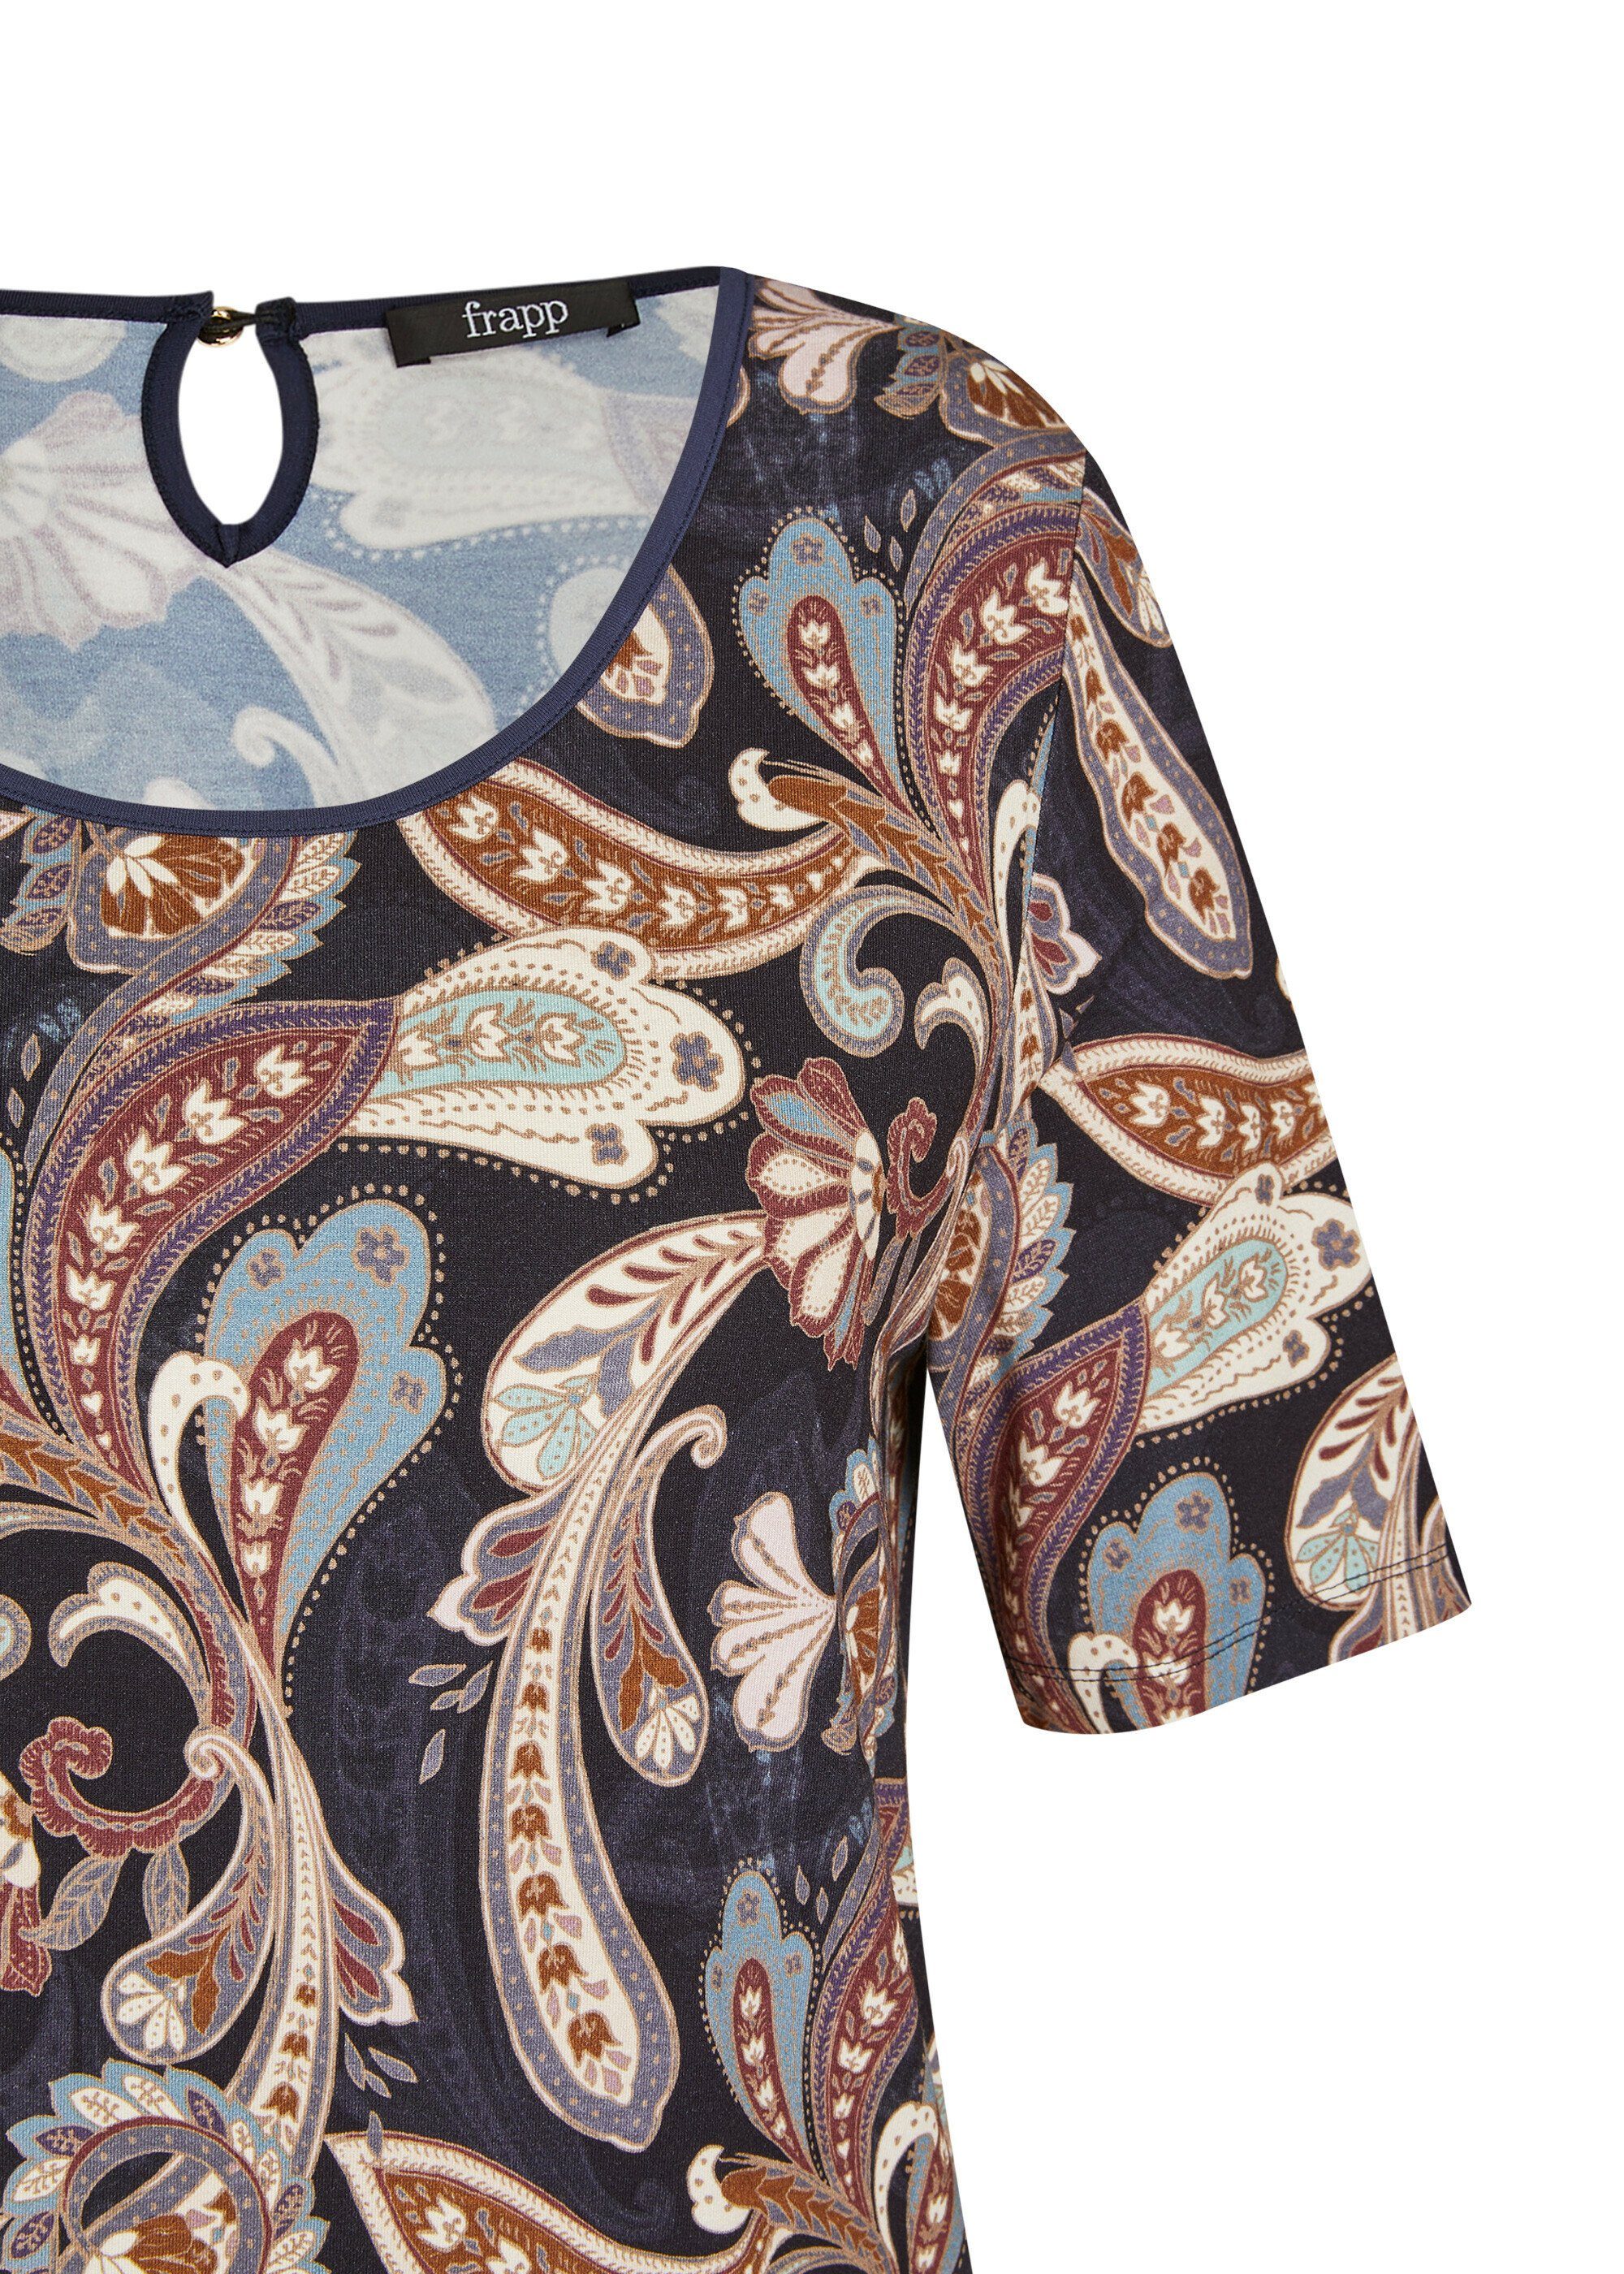 Muster orientalischem Romantisches mit FRAPP T-Shirt Print-Shirt